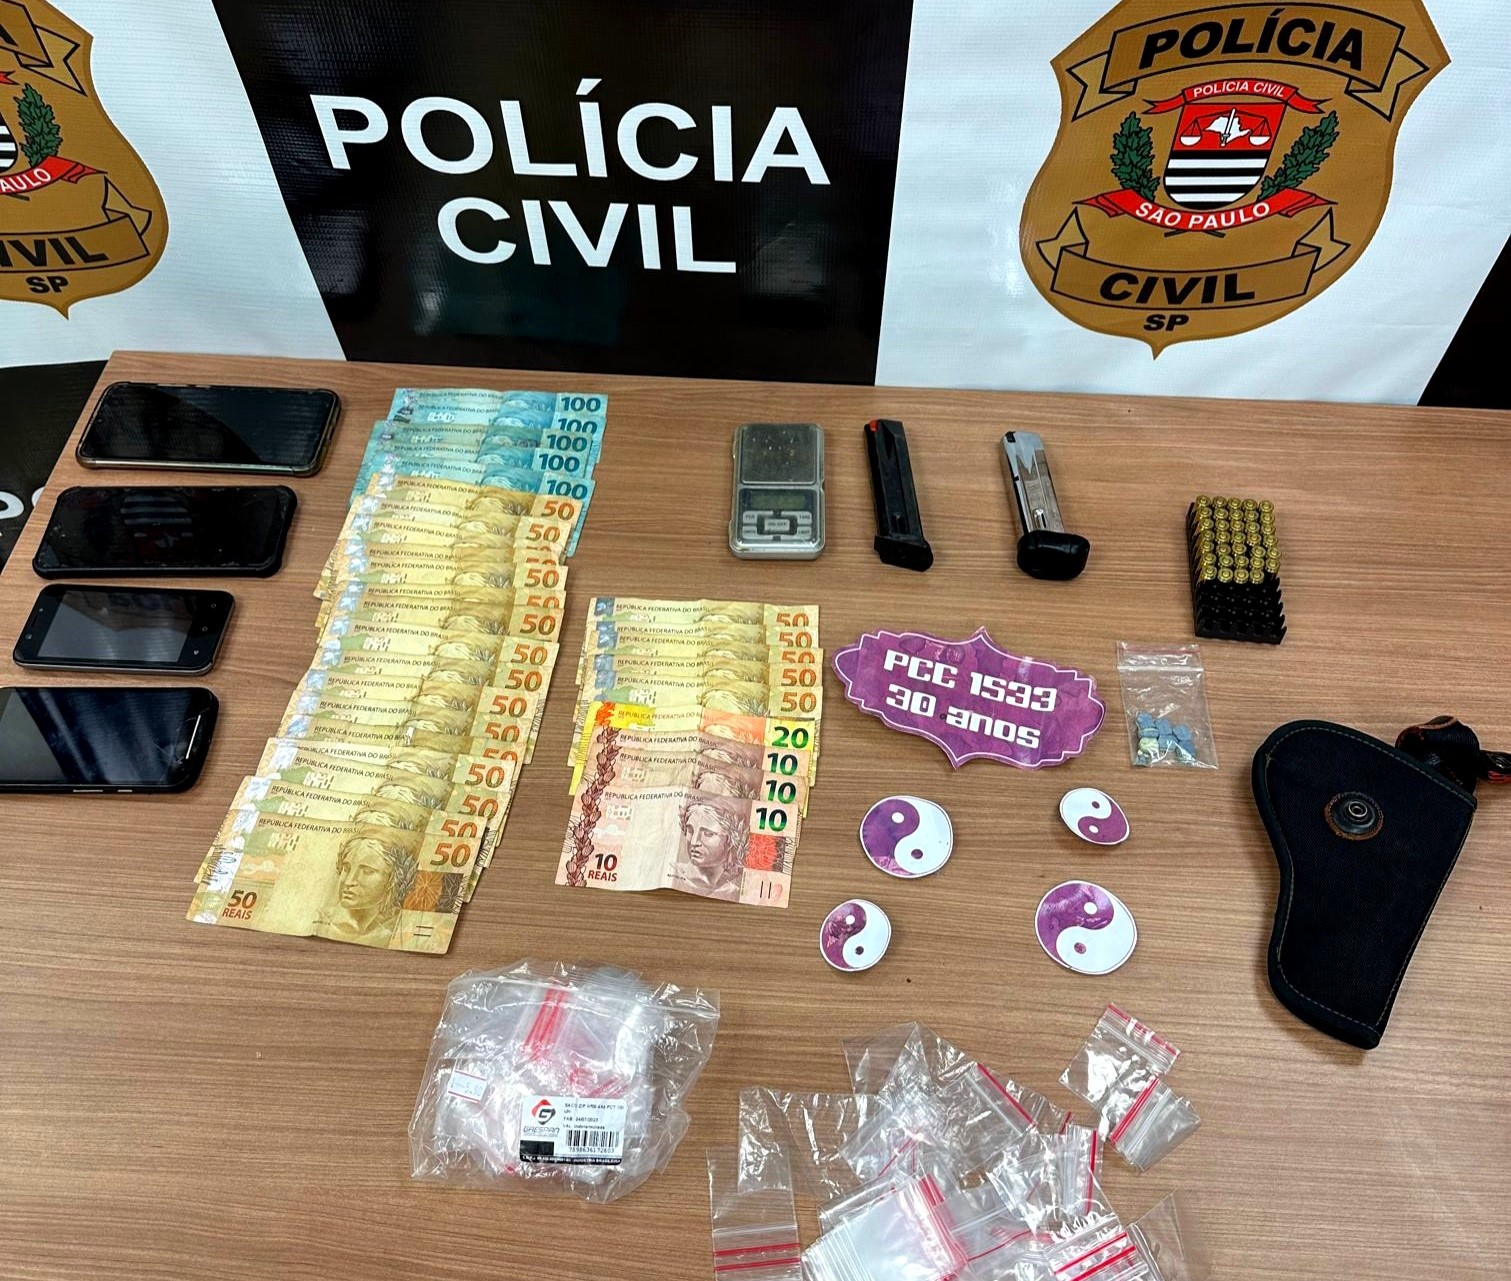 Membro de facção criminosa é detido com drogas e munições em Hortolândia